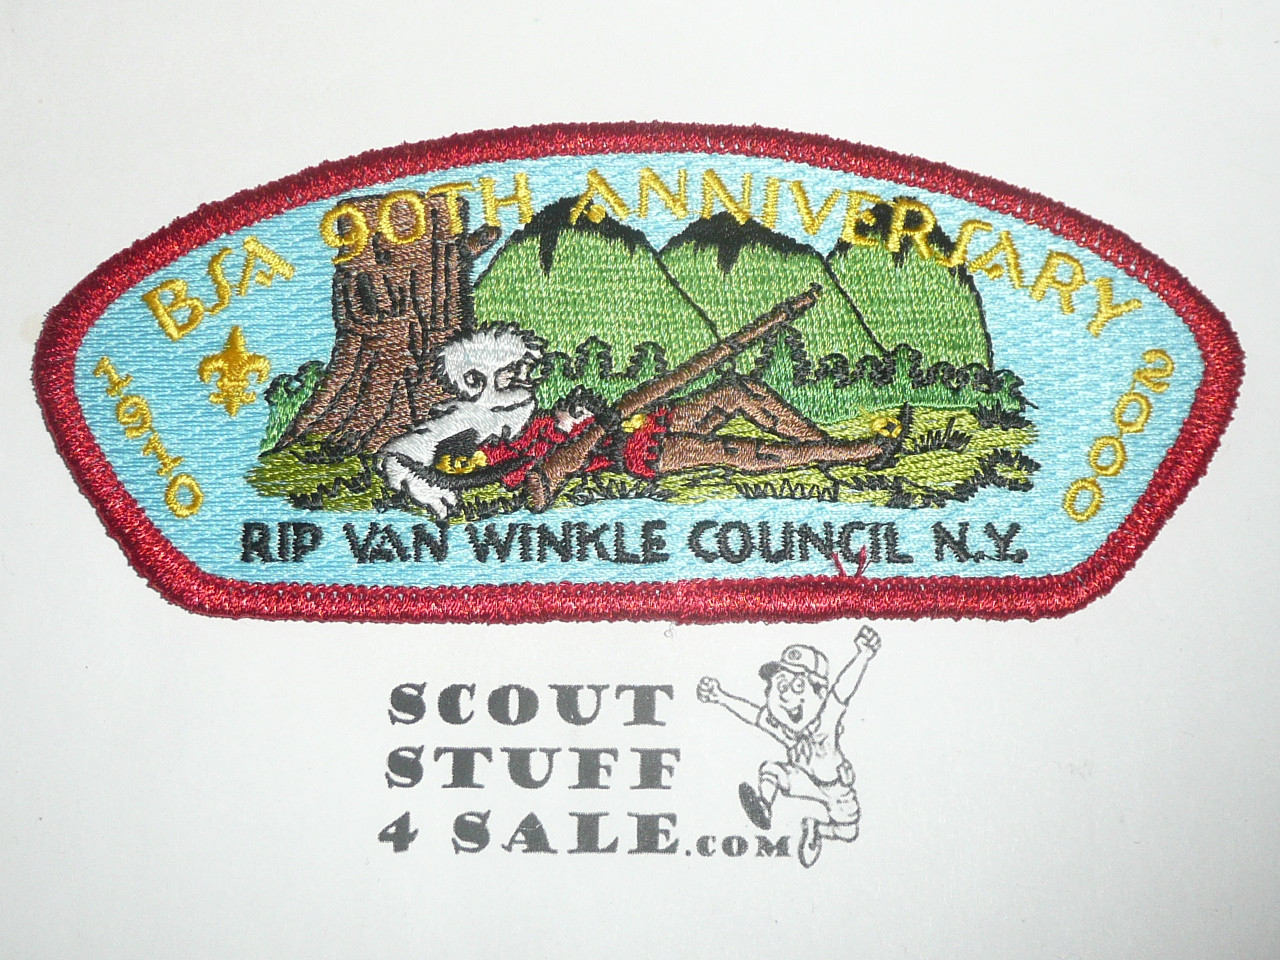 Rip Van Winkle Council sa8 CSP - BSA 90th Anniversary